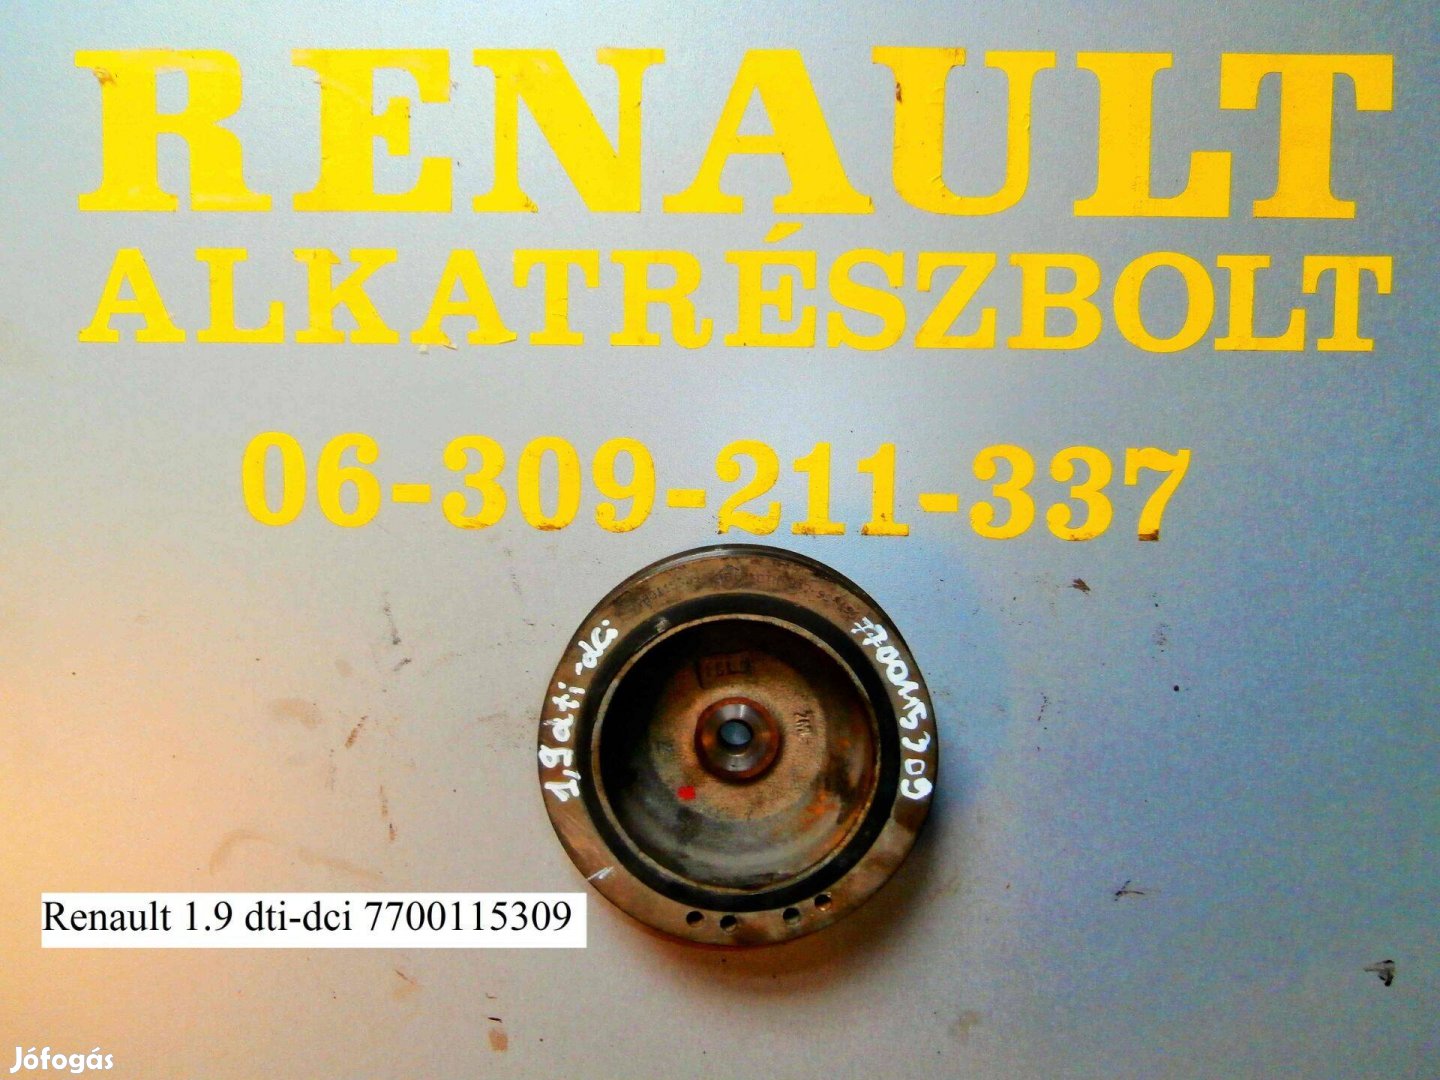 Renault 1.9 dti-dci 7700115309 főtengely ékszíjtárcsa